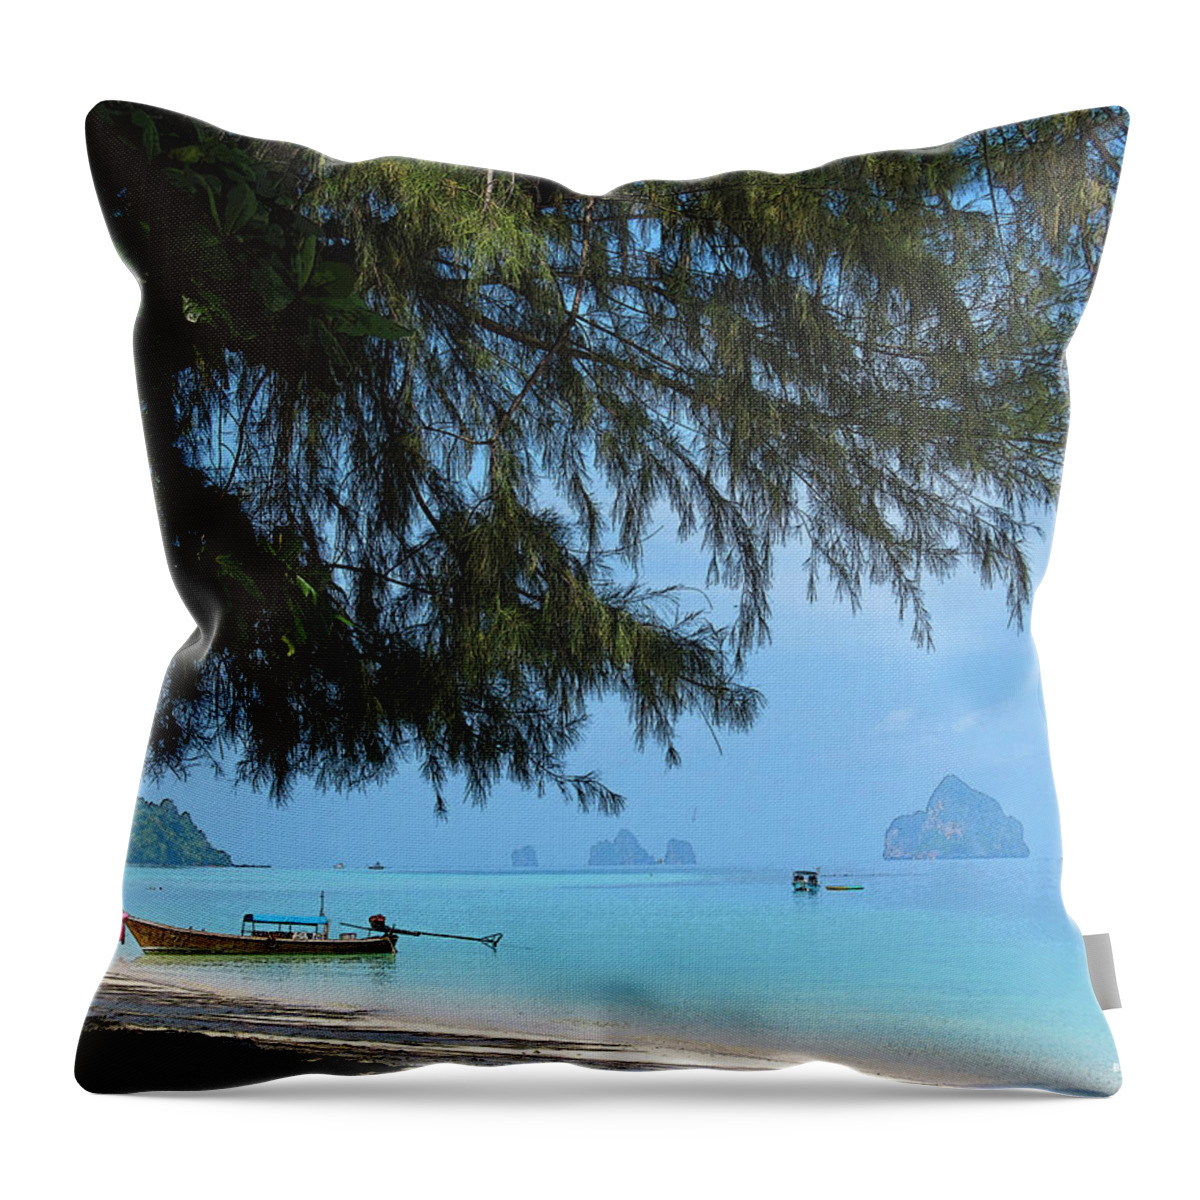  Throw Pillow featuring the digital art Thai Beach 02 by Brian Gilna